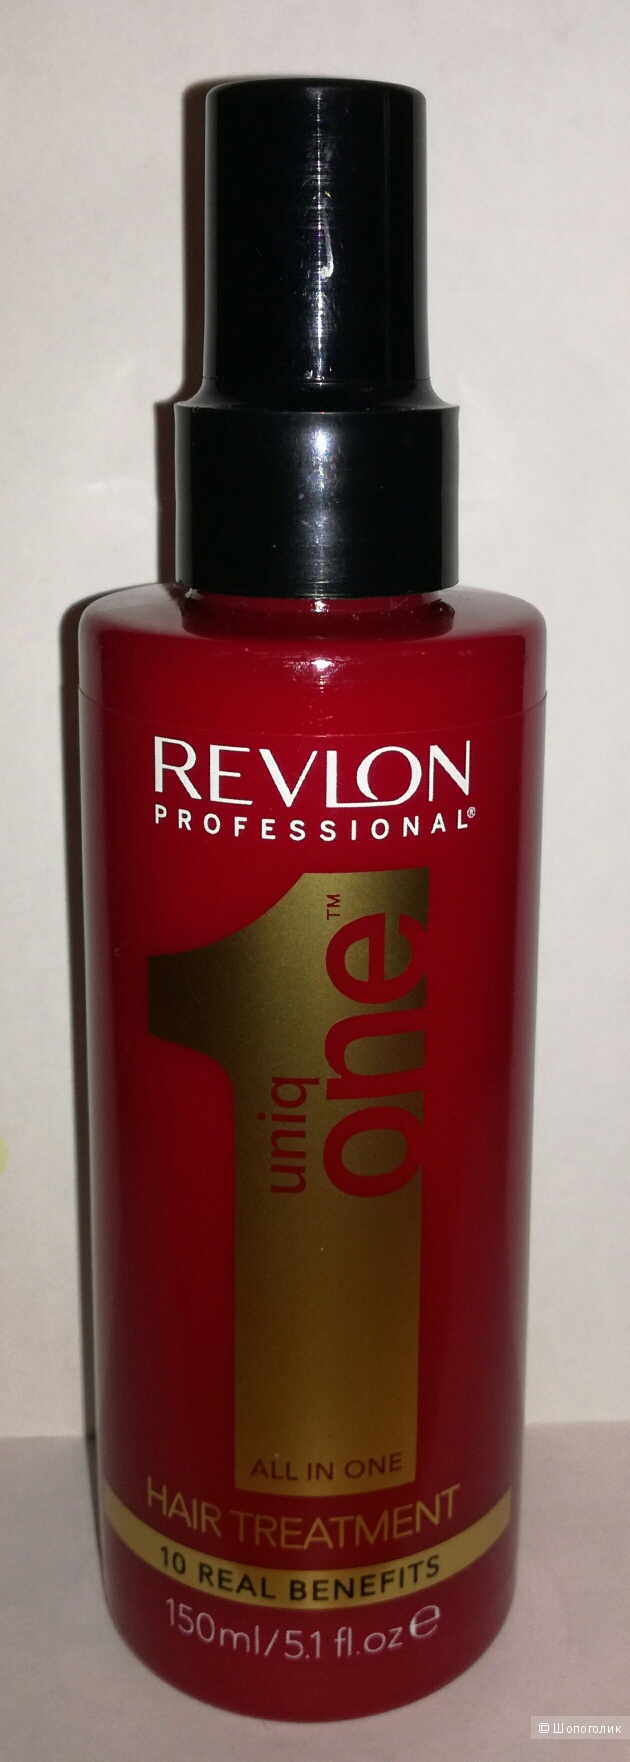 Revlon Uniq One All In One Hair Treatment несмываемая маска спрей 10 в 1